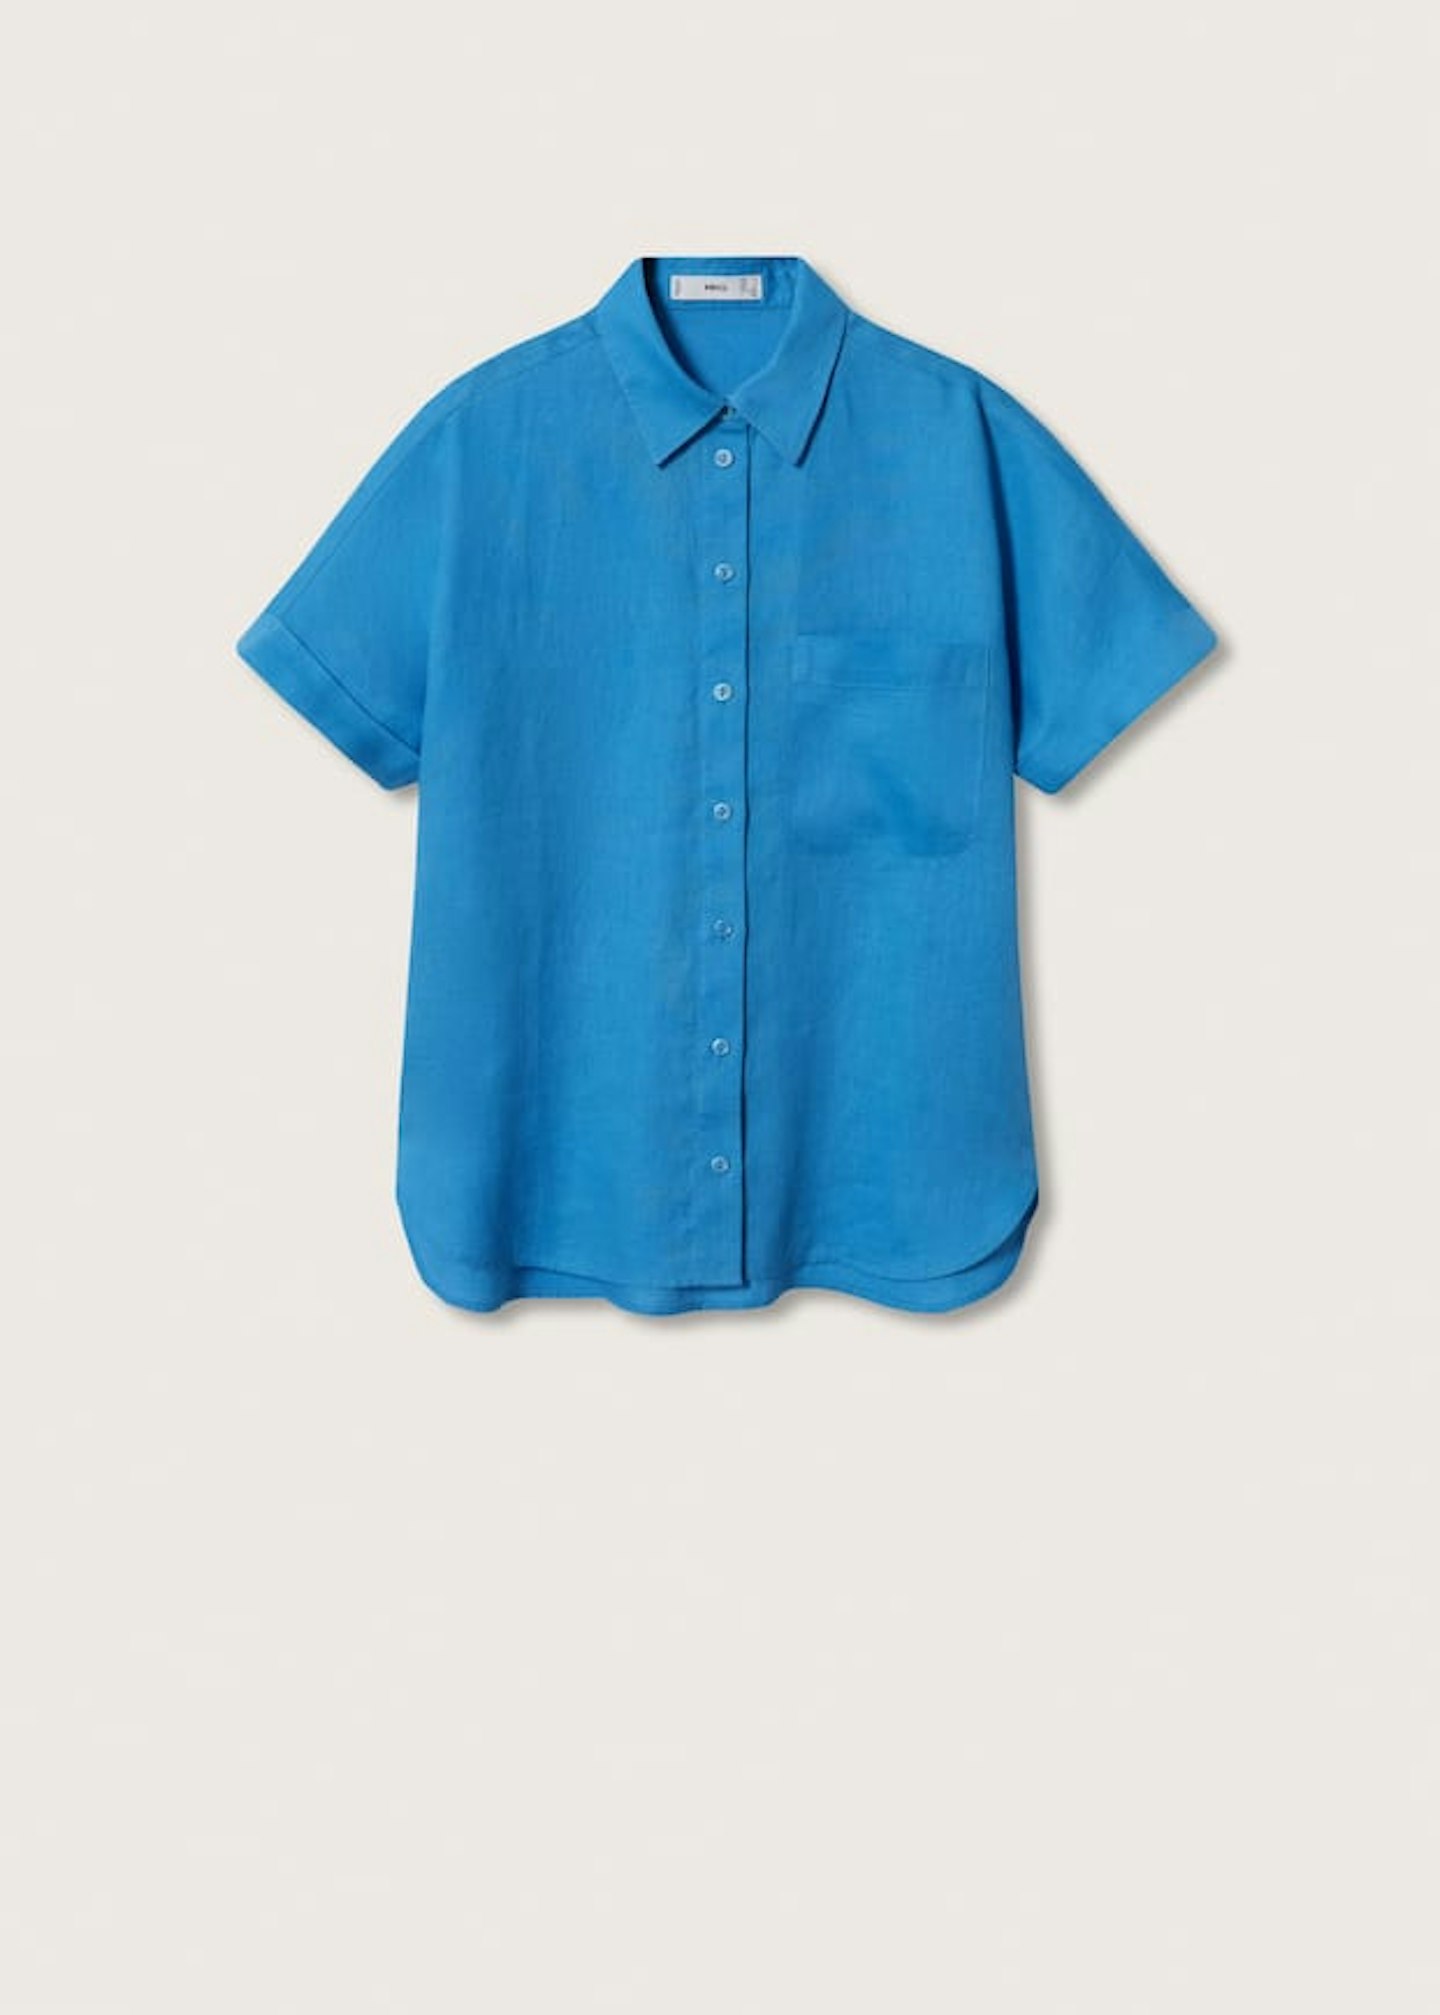 Mango, Linen 100% shirt, £29.99